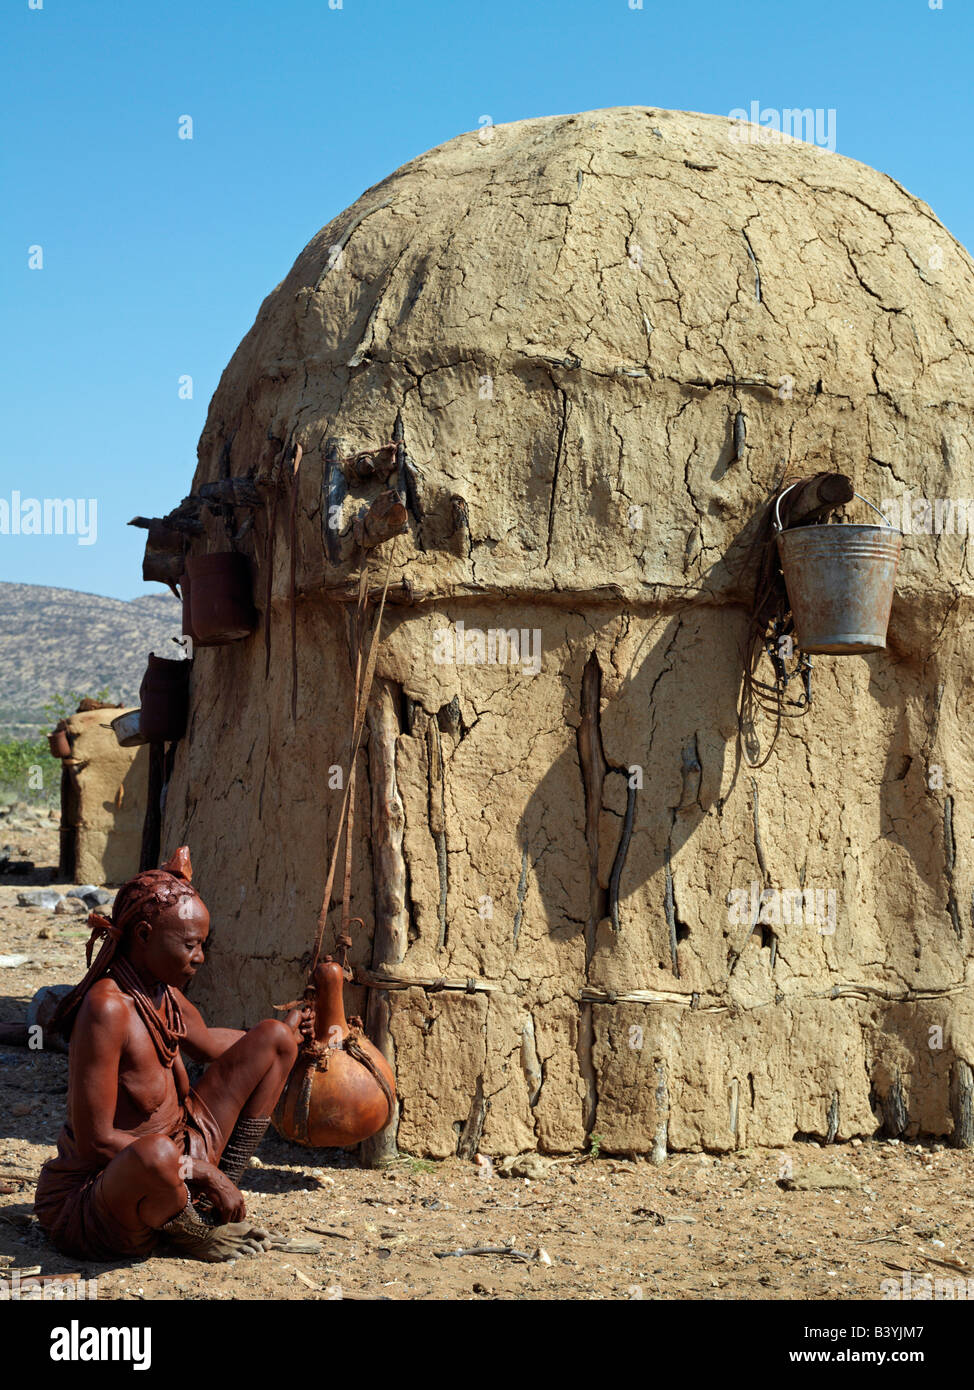 Namibia, Kaokoland. Eine alte Himba Frau schüttelt sanft einen große Milch-Kürbis um Butter vor ihrem Haus zu machen. Ihr Körper glänzt aus einer Stockfoto